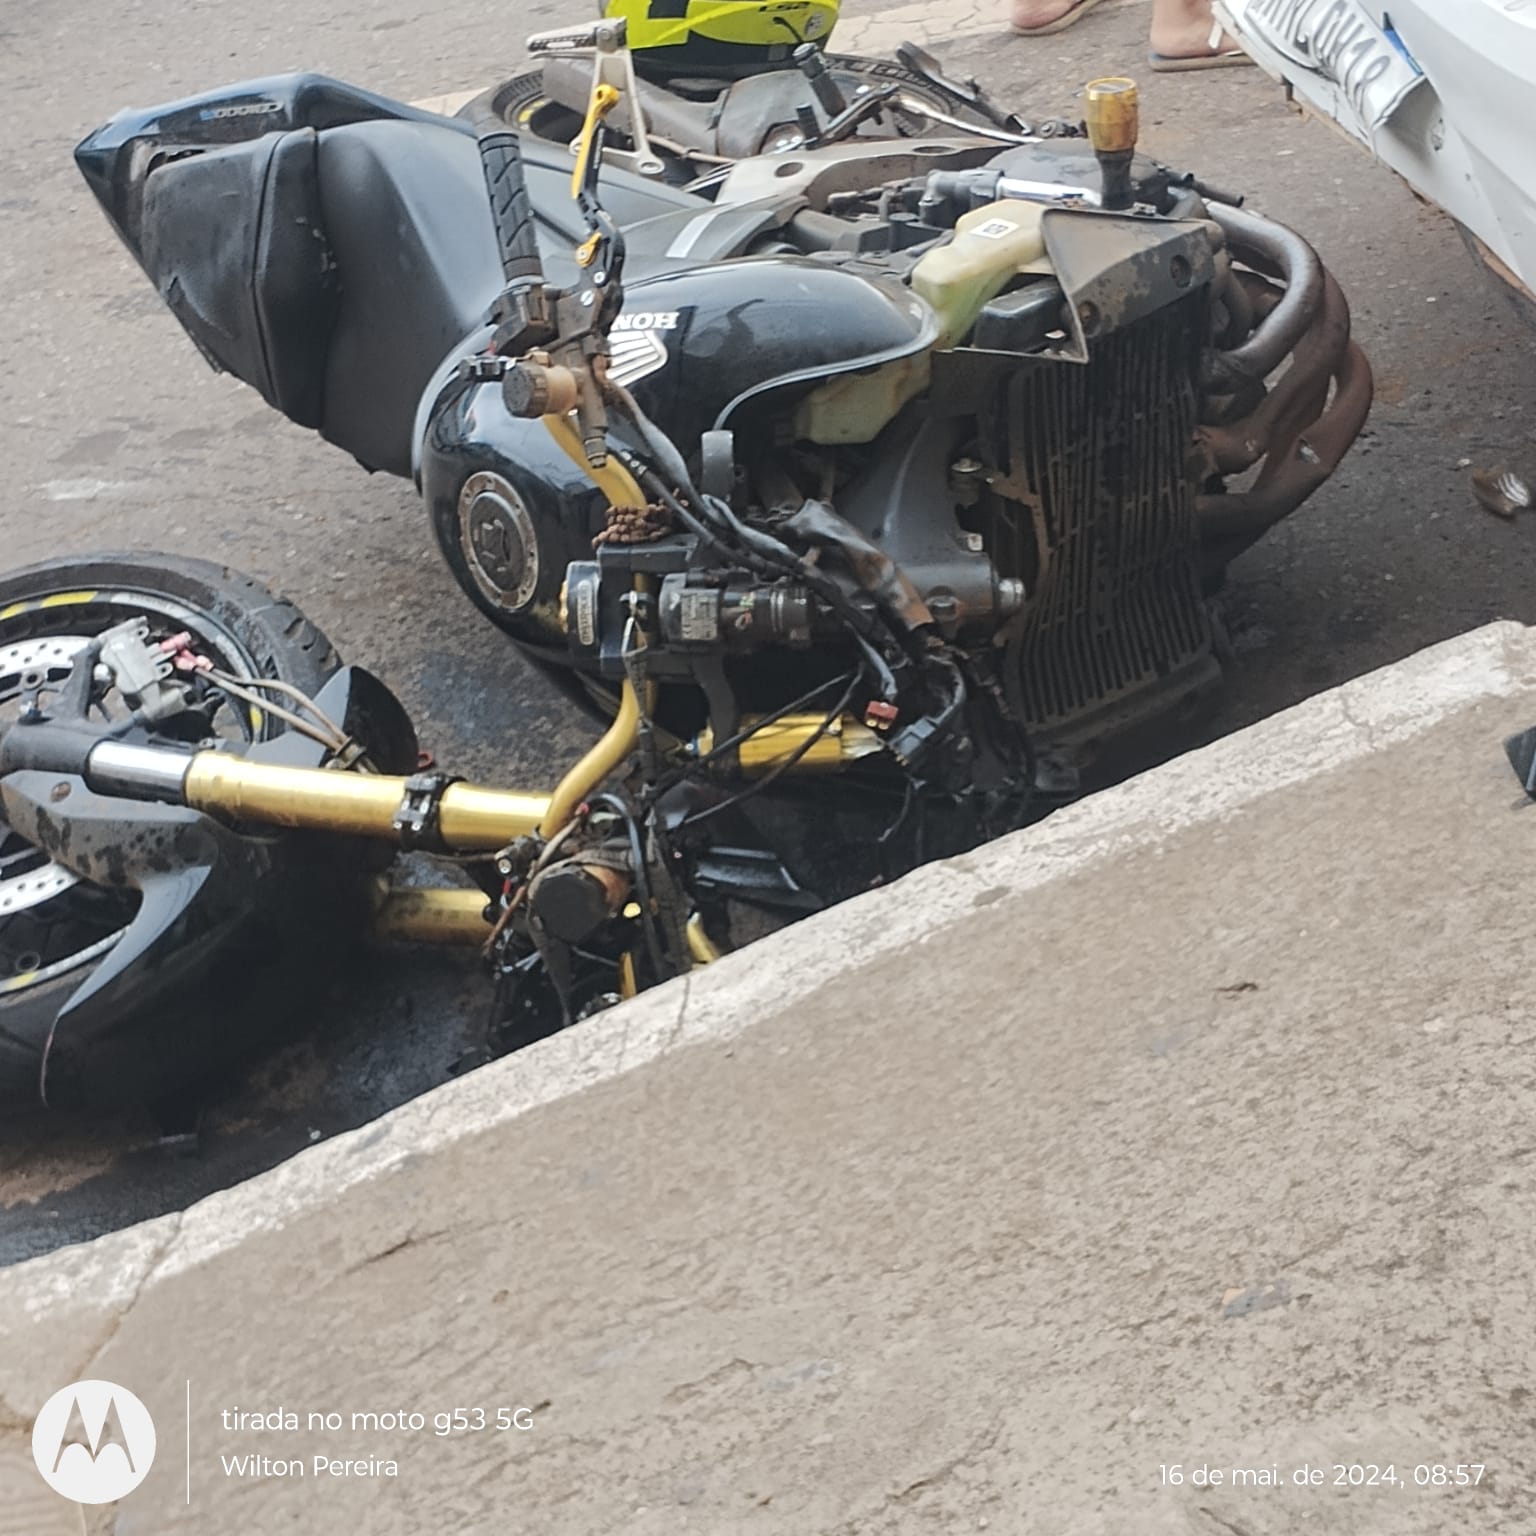 PERTO DA TRAGÉDIA: moto se parte ao meio em acidente no centro da cidade; veja fotos